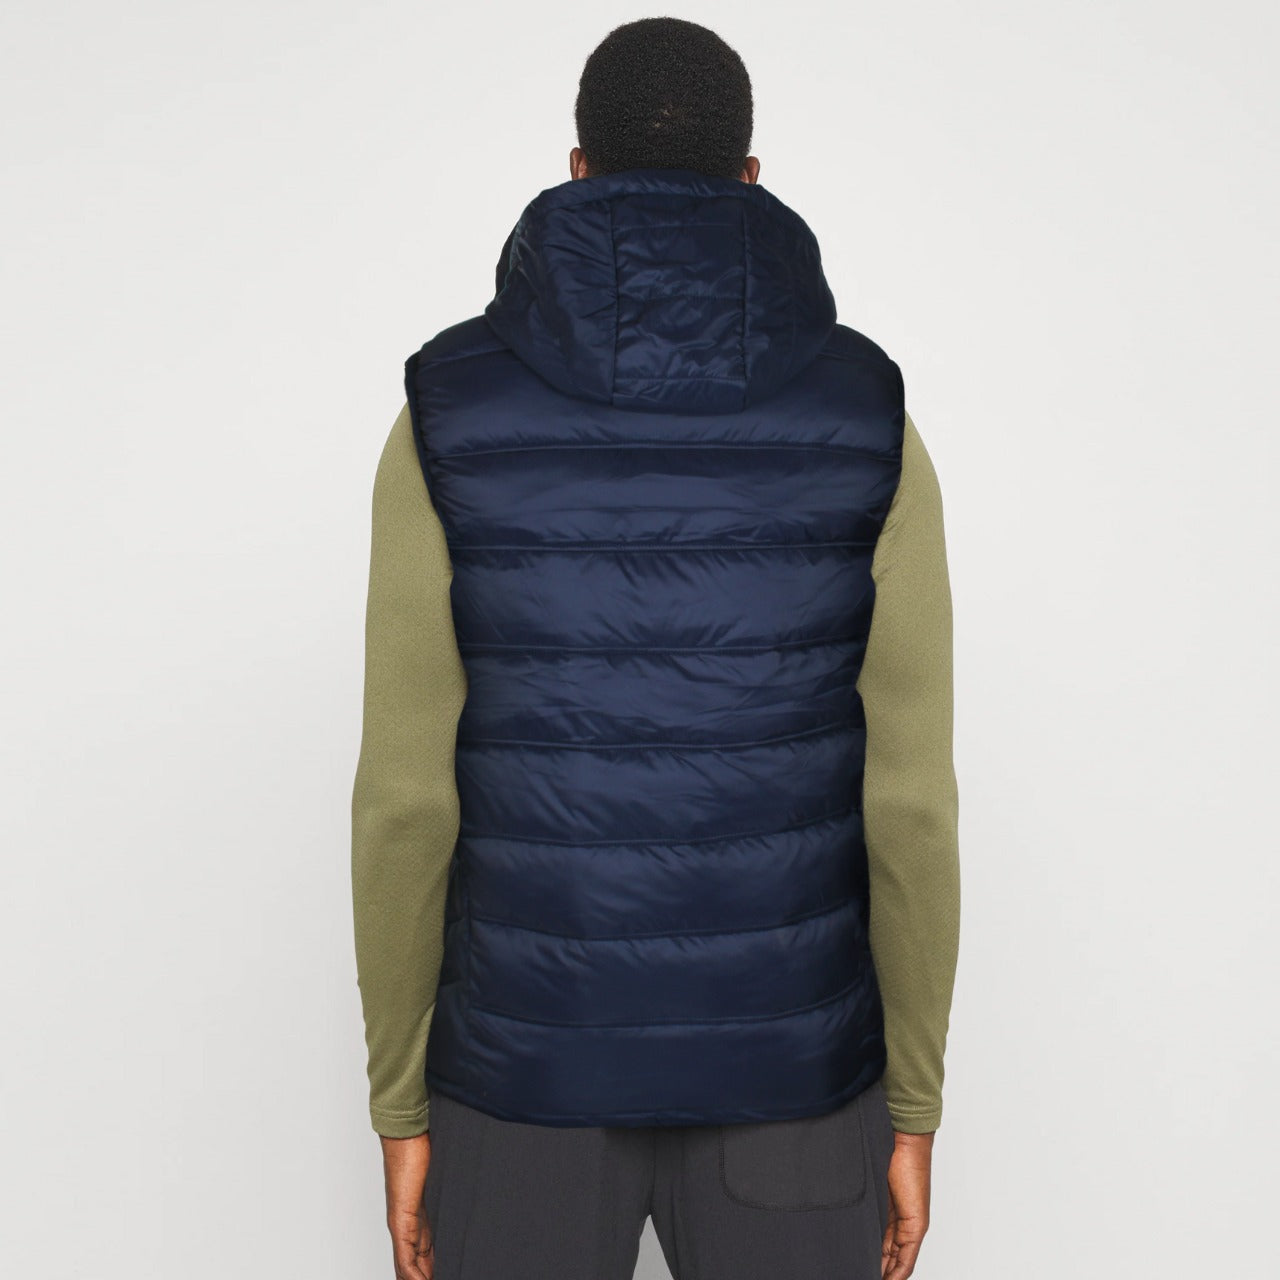 ADDIDS Imported blue sleeveless jacket (00267)